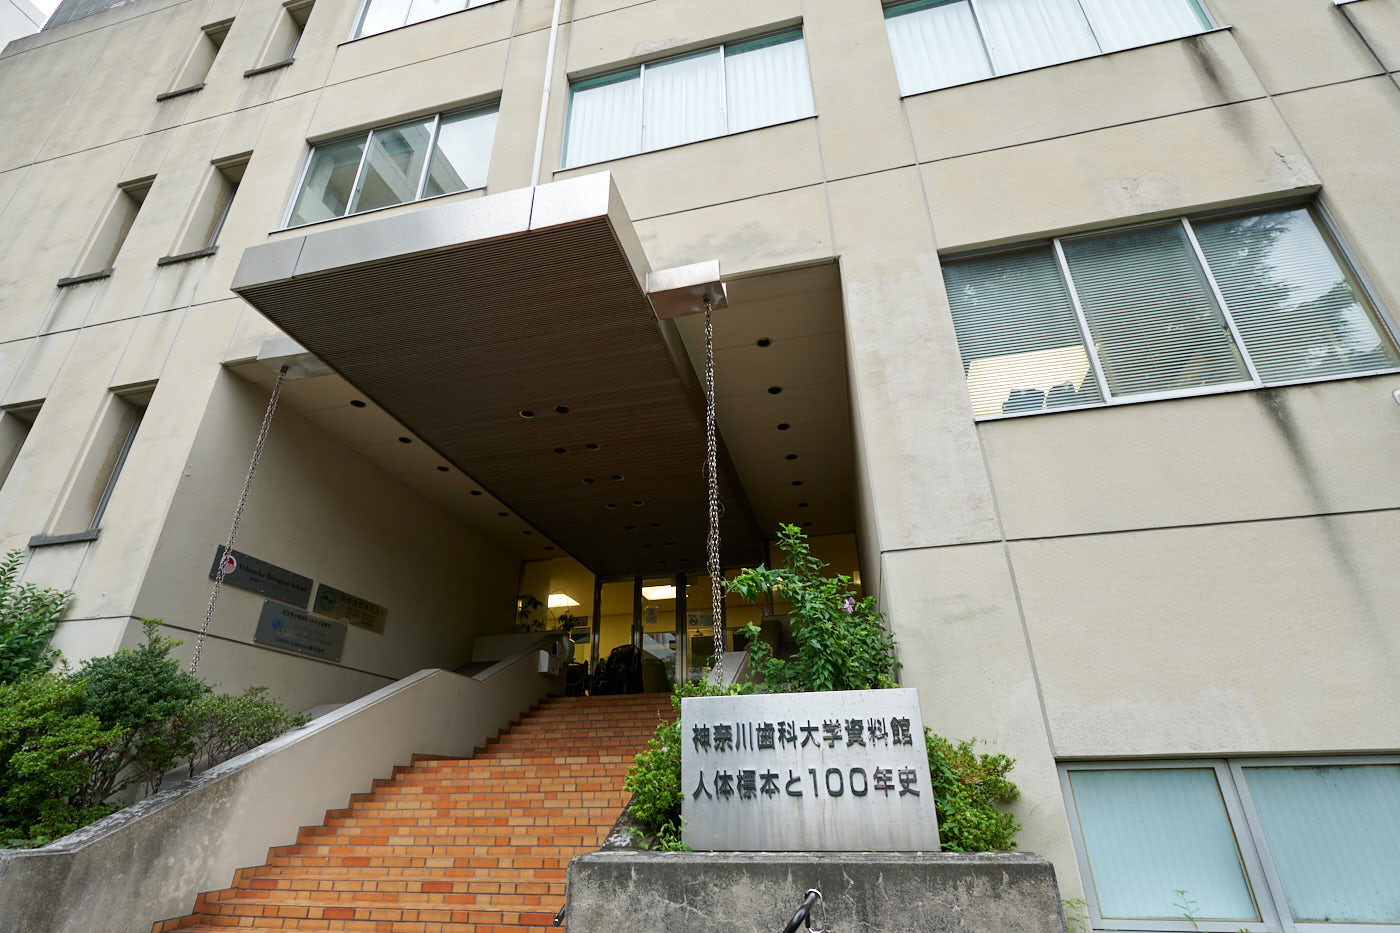 歴史資料室と人体標本室から構成される神奈川歯科大学資料館